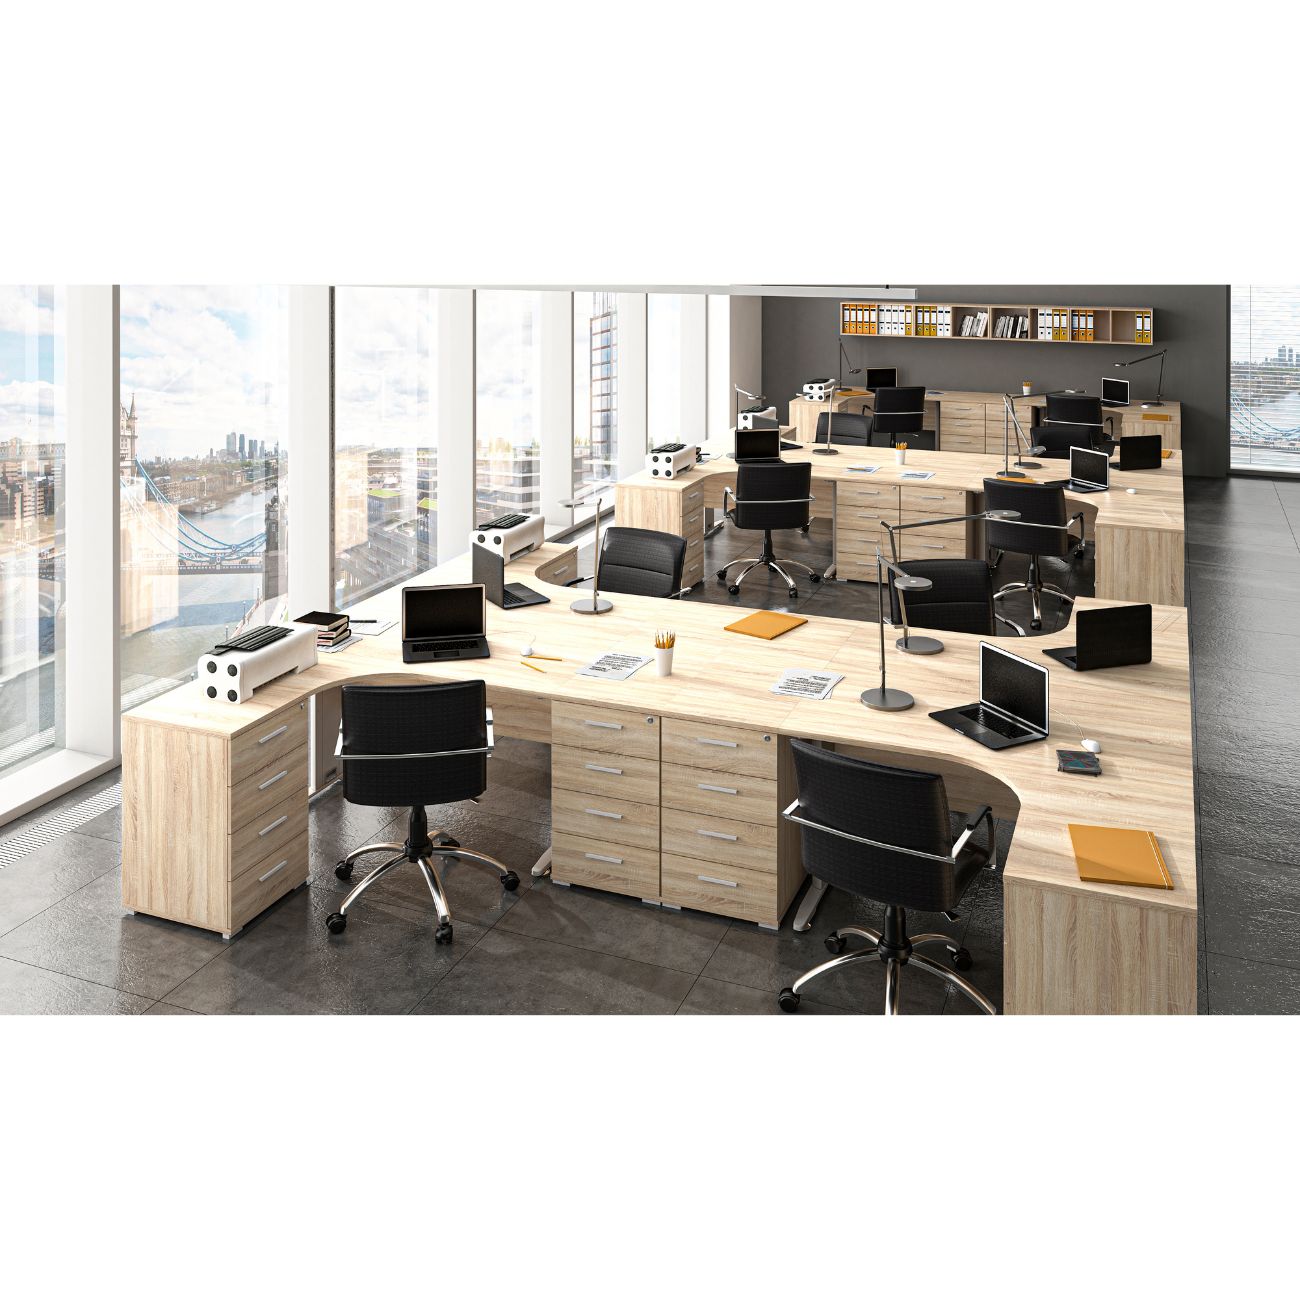 Zdjęcie przedstawiające przykładową aranżację nowoczesnego biura z meblami biurowymi Office z biurkami oraz kontenerkami z szufladami